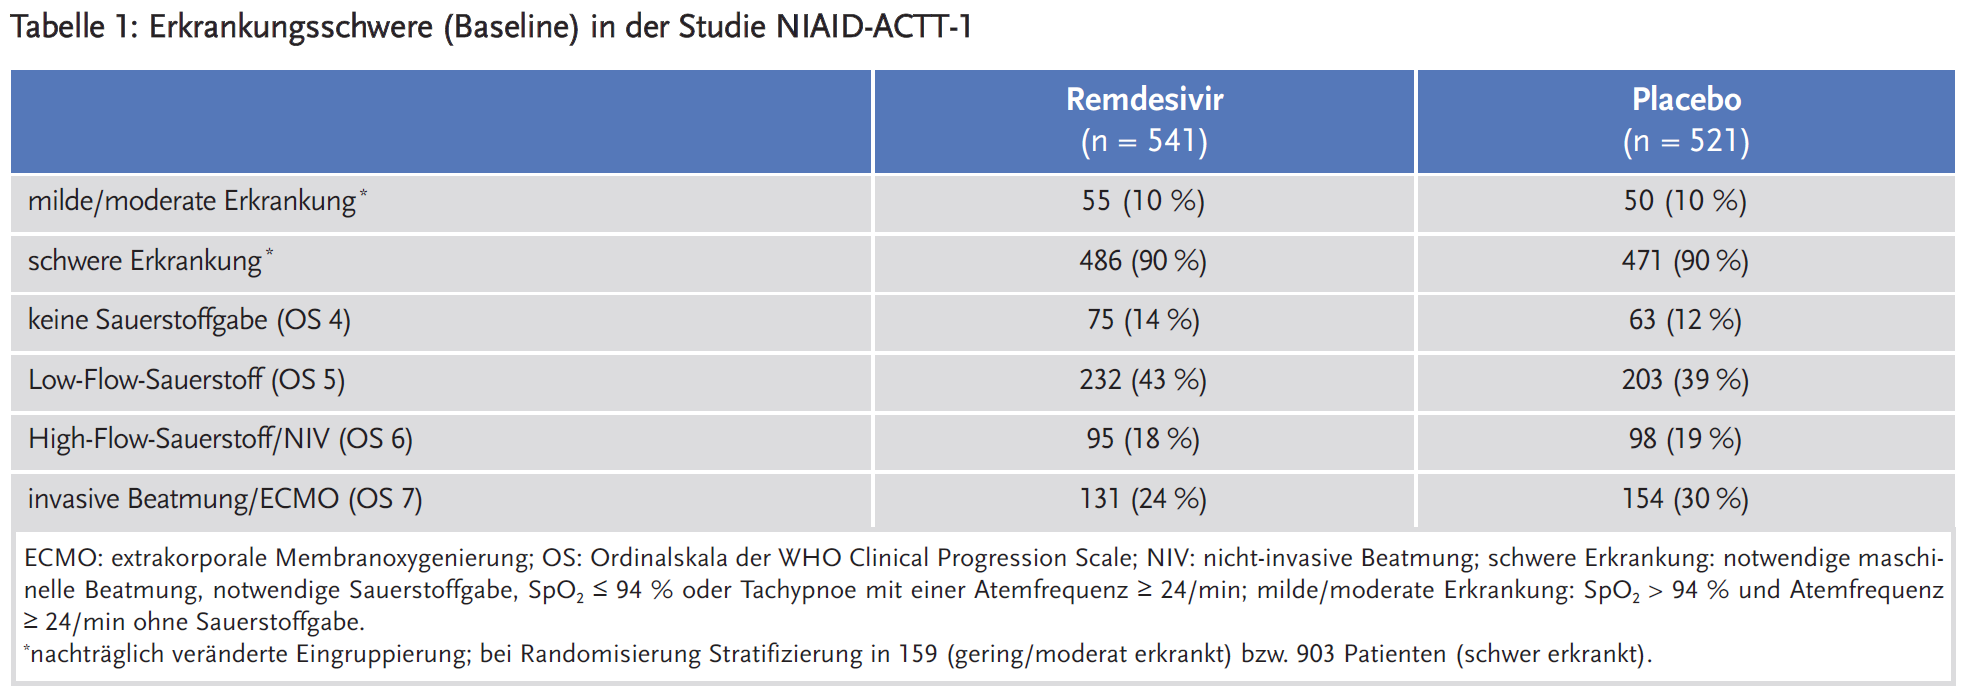 Tabelle 1: Erkrankungsschwere (Baseline) in der Studie NIAID-ACTT-1